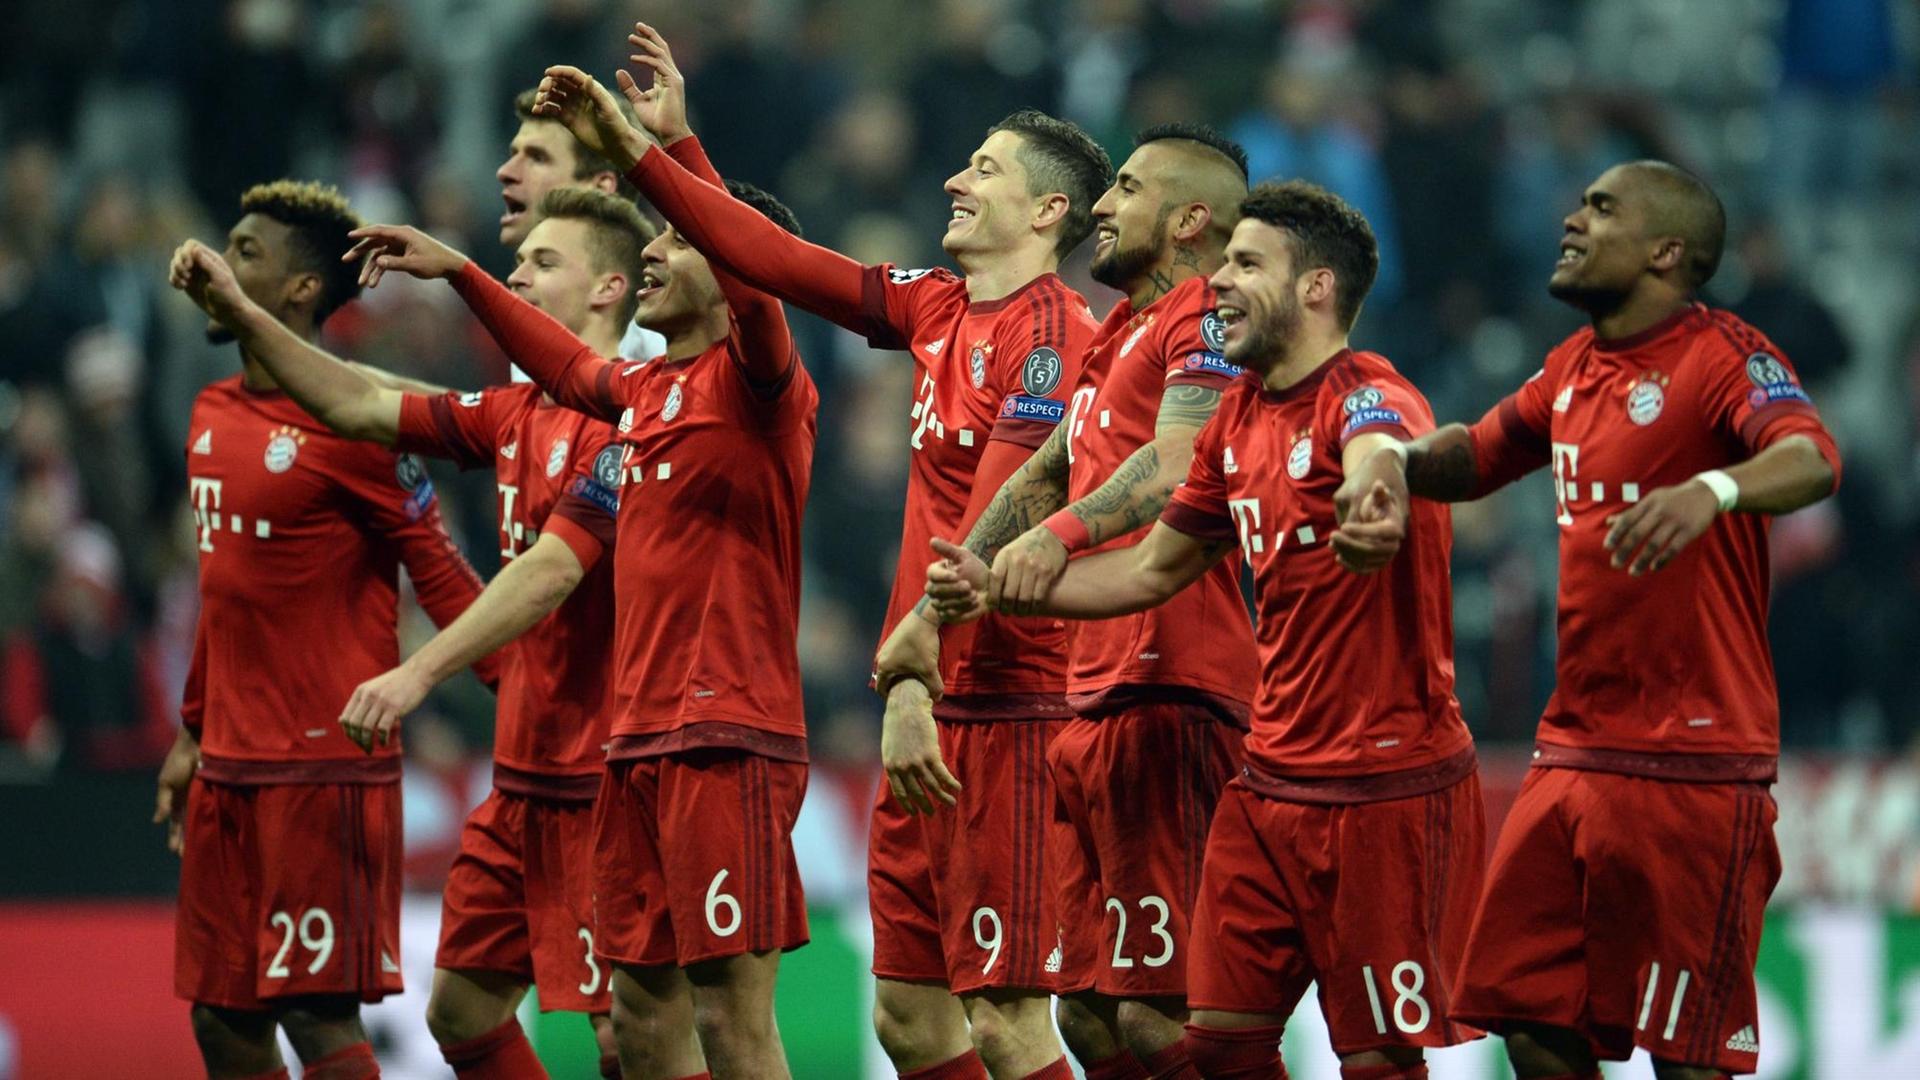 Man sieht die Spieler des FC Bayern in roten Trikots, sie jubeln und heben dabei die Arme.